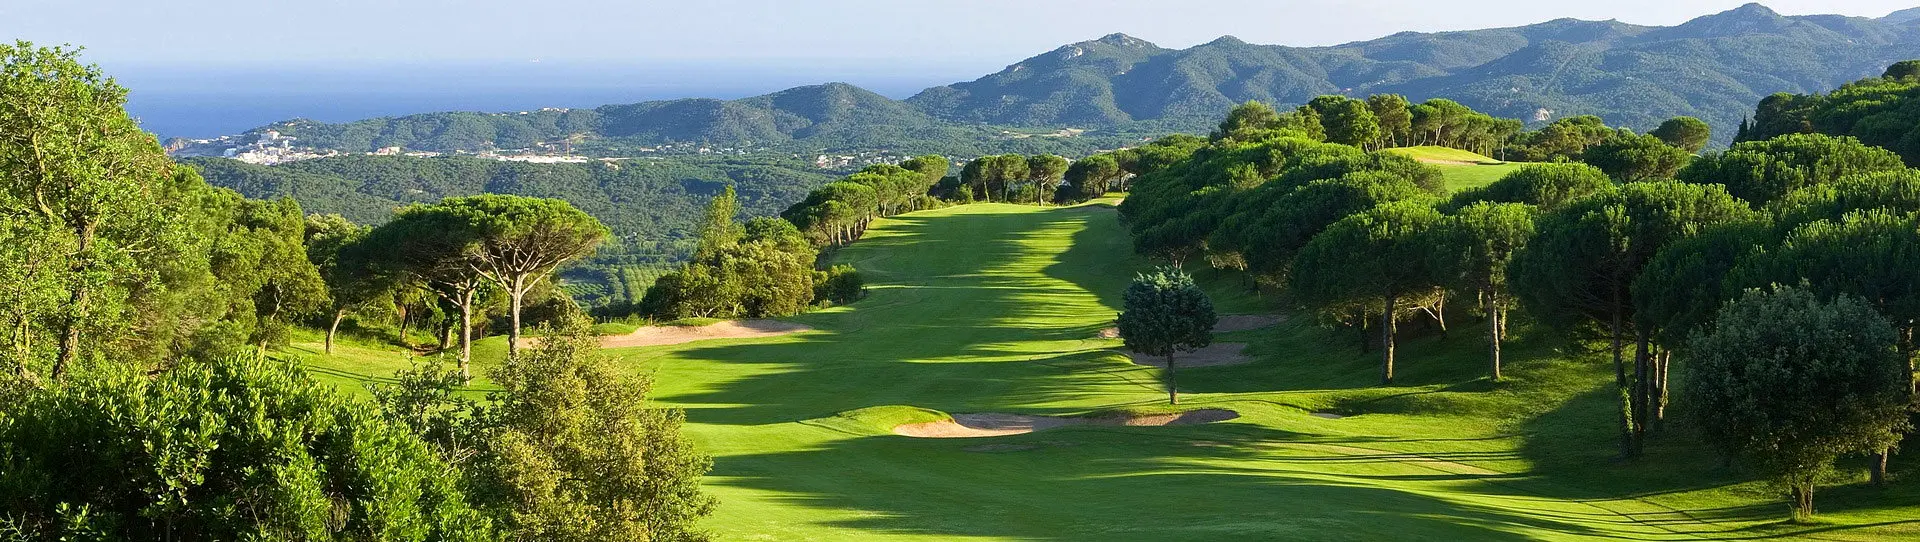 Spain golf courses - Golf d Aro - Photo 1